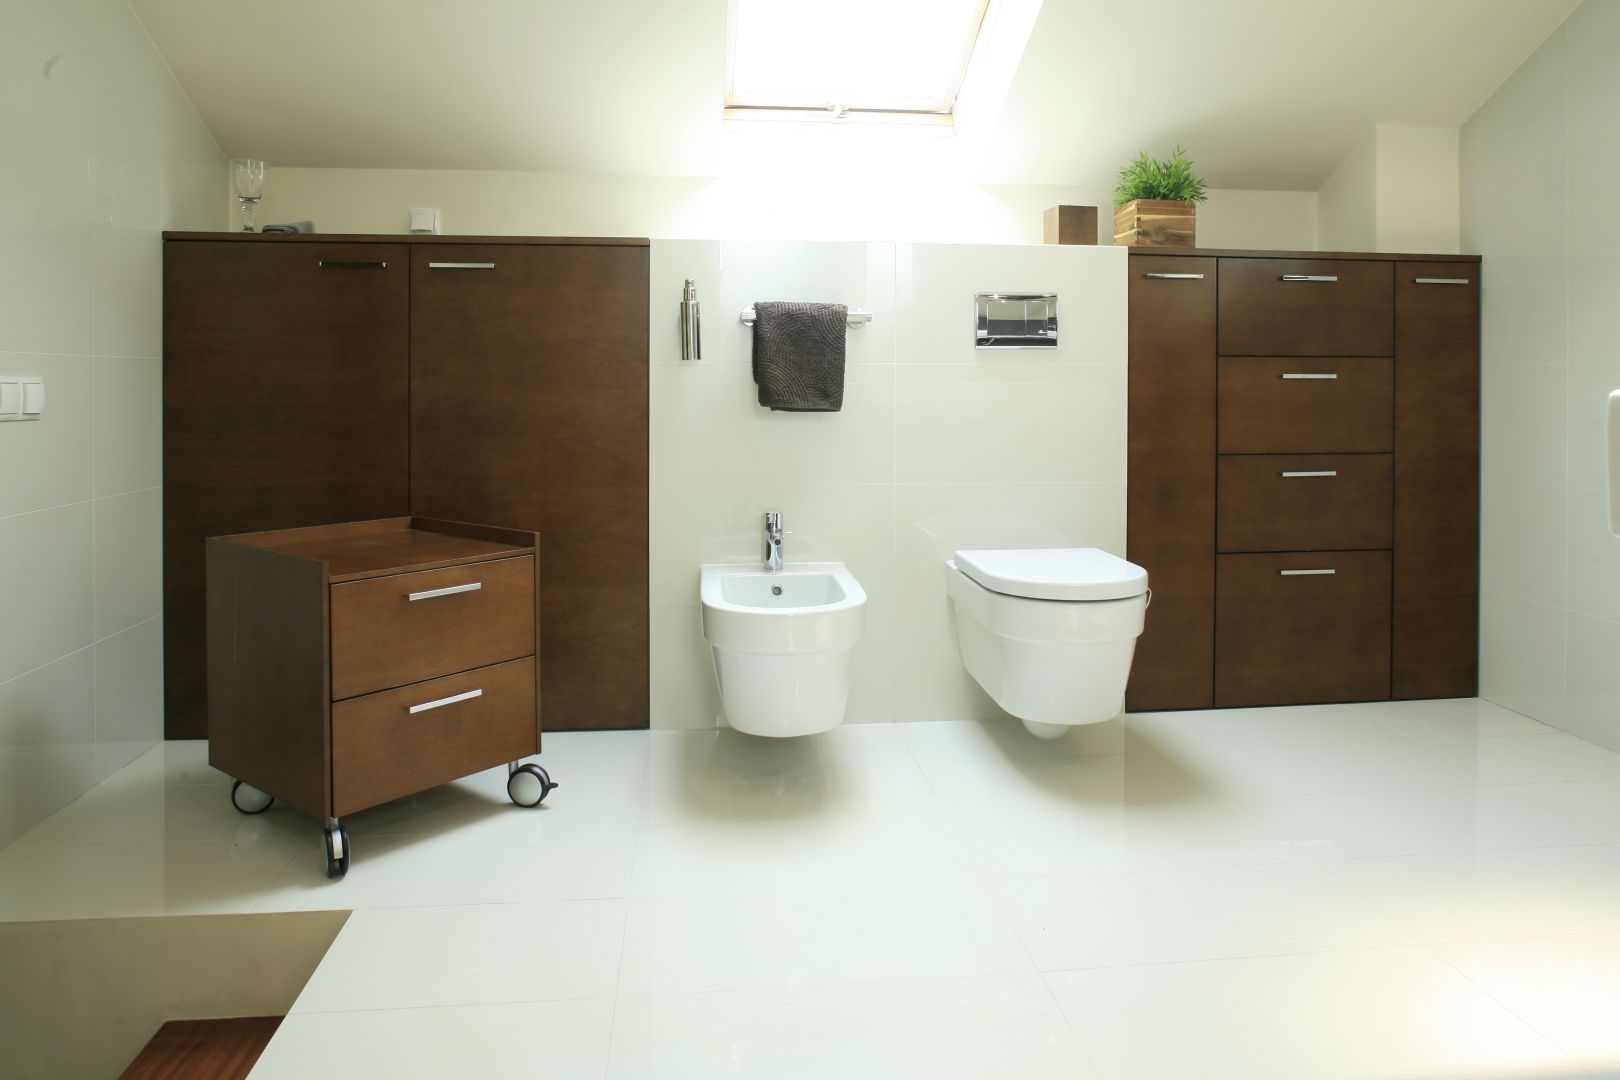 W nowoczesnej łazience świetnie sprawdzą się meble mobilne, które można łatwo przesunąć. Projekt: Aleksandra Wołczyk Fot. Bartosz Jarosz 